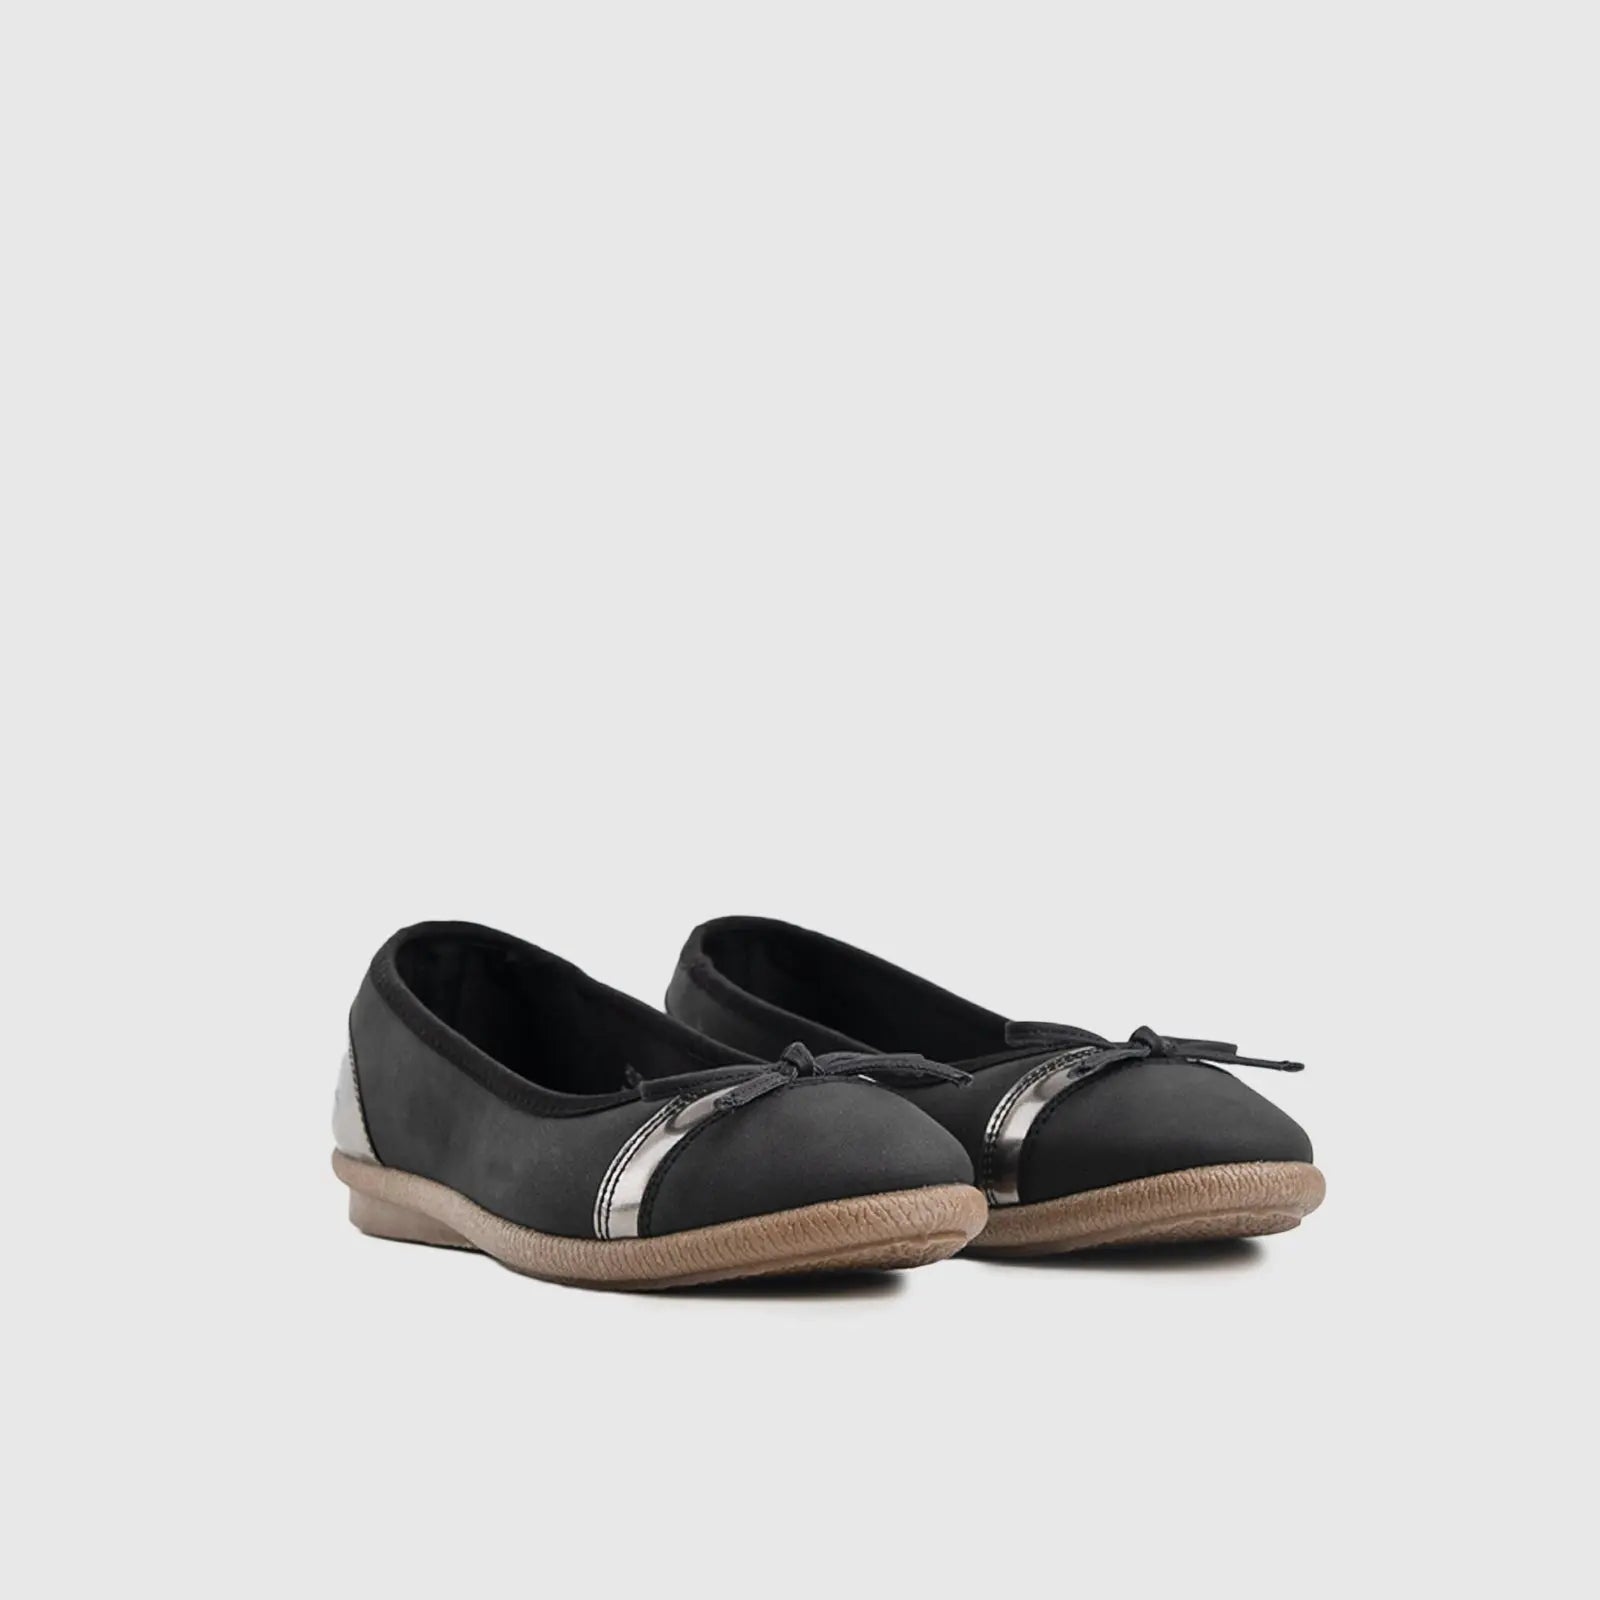 Pierre Cardin Casual Sandals - 10314 Black Sandals | familyshoecentre